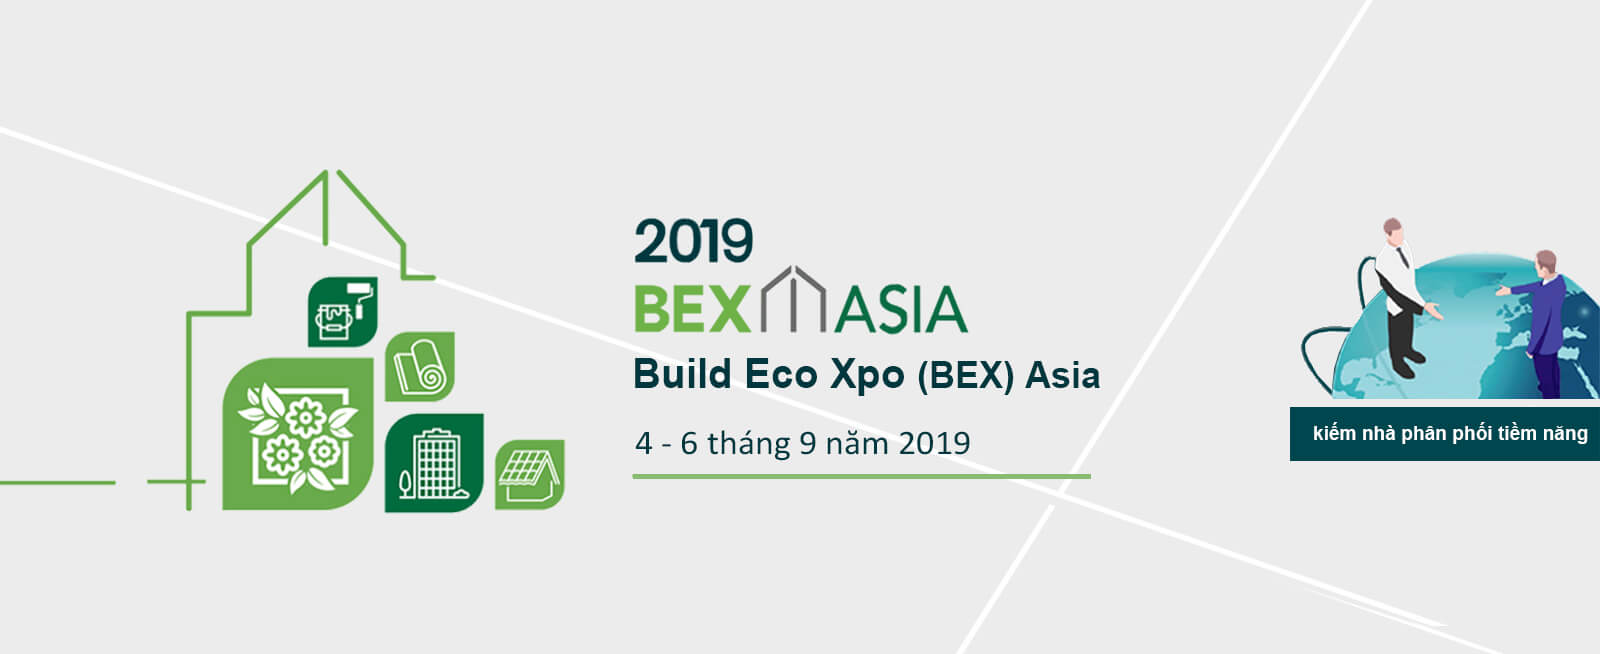 Hội chợ triễn lãm BexAsia sẽ được tổ chức vào tháng 9 năm 2019 tại Singgapore với chủ đề vật liệu xây dựng công nghệ xanh thân thiện và bảo vệ môi trường